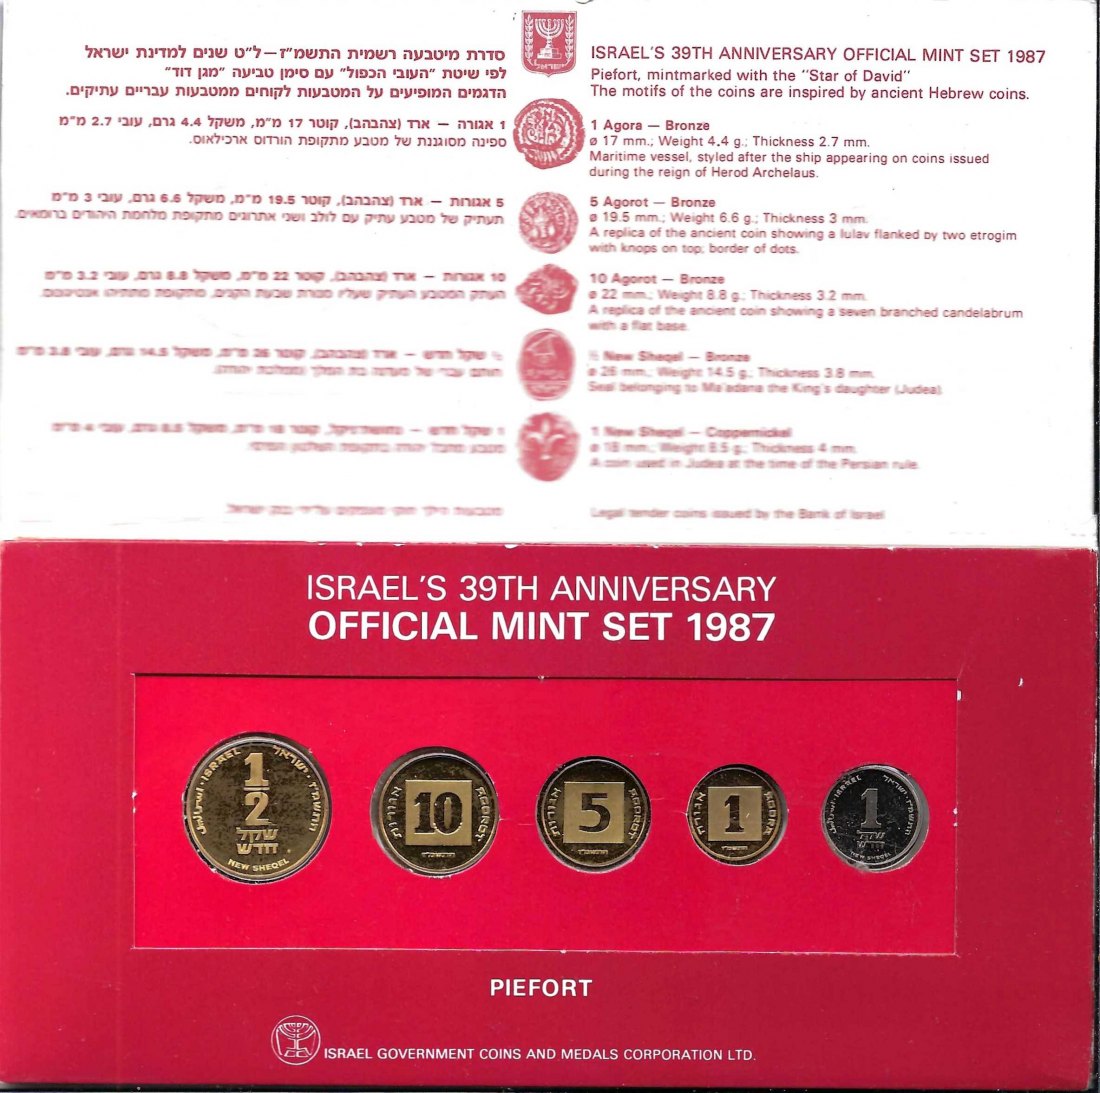  KMS Israel Official Mint Set 1987 Piefort Golden Gate Münzenankauf Frank Maurer Koblenz X558   